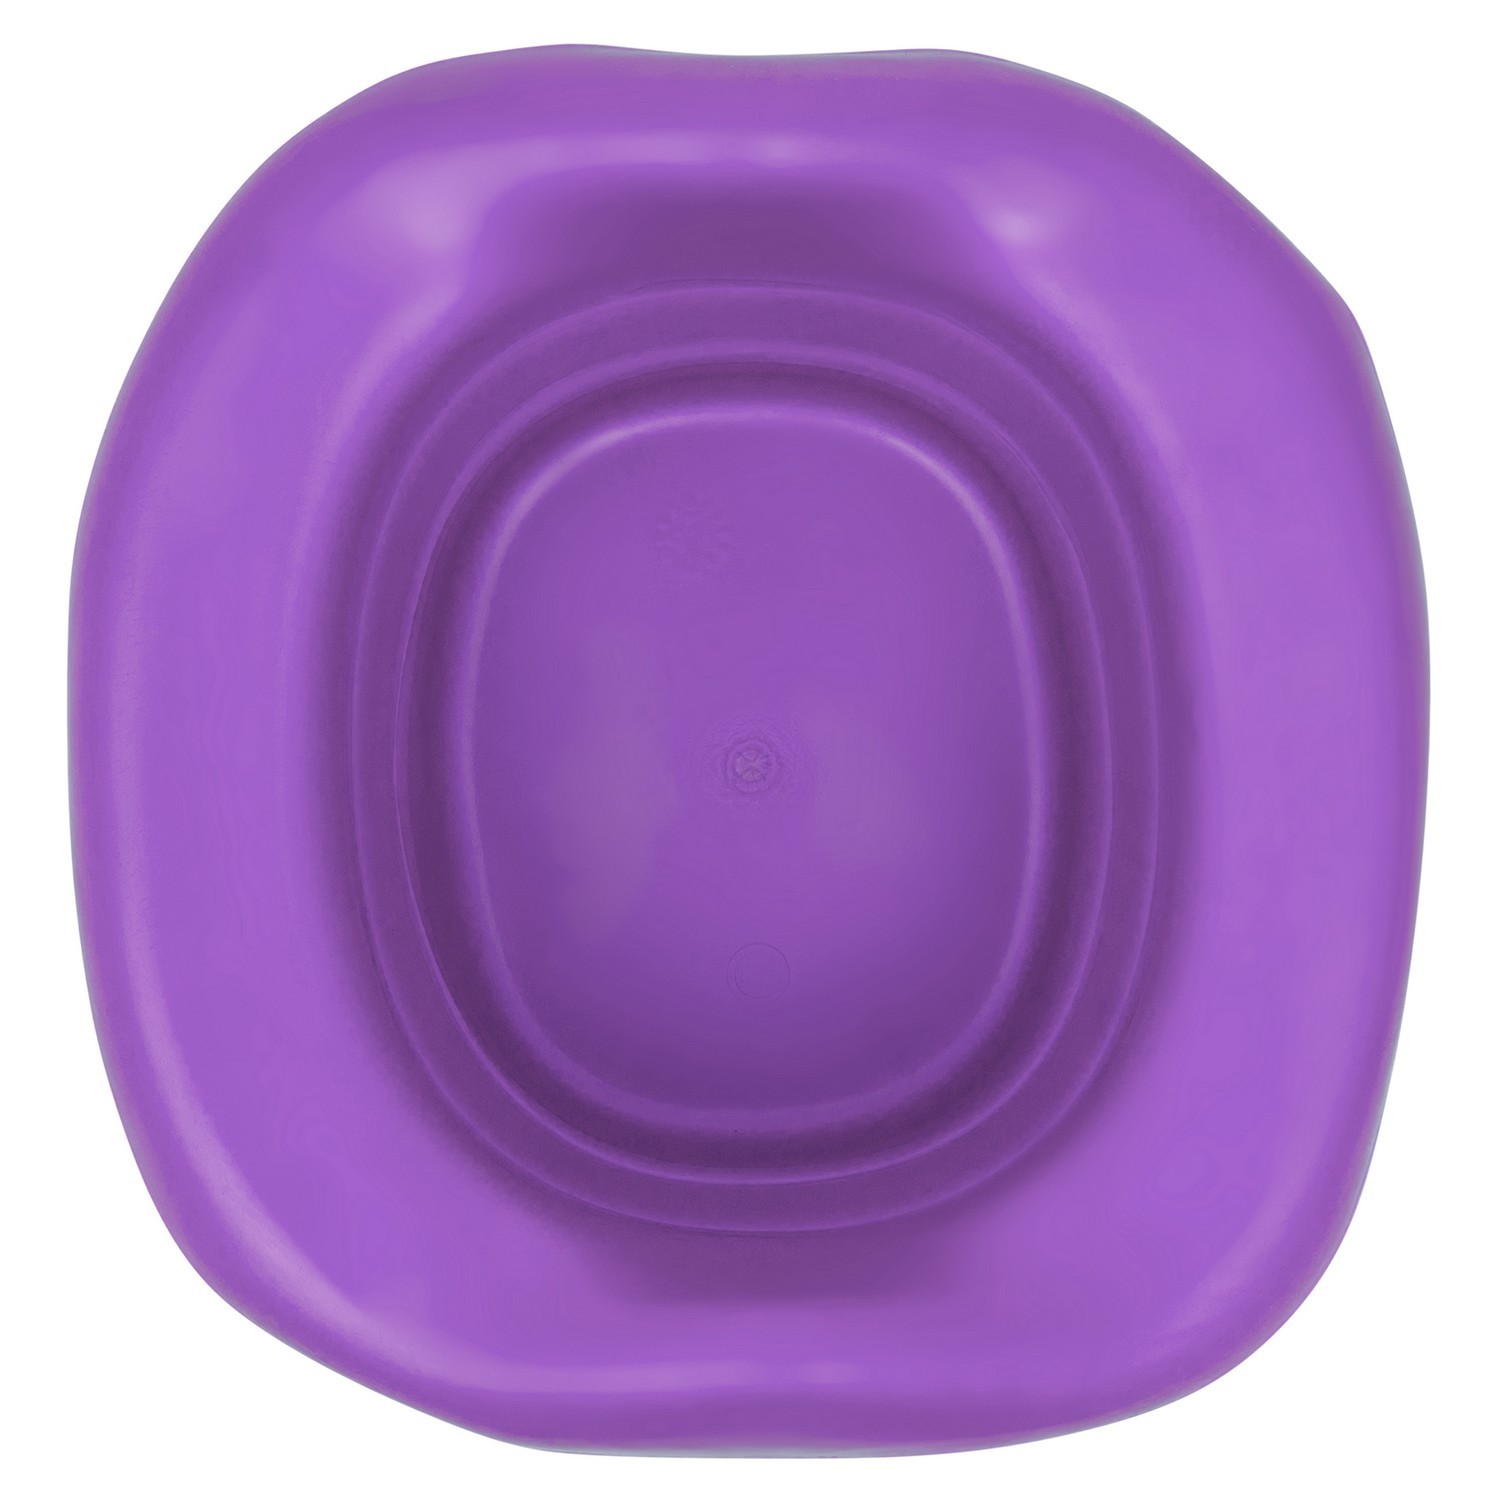 Вкладка для дорожных горшков ROXY-KIDS универсальная Фиолетовый - фото 2